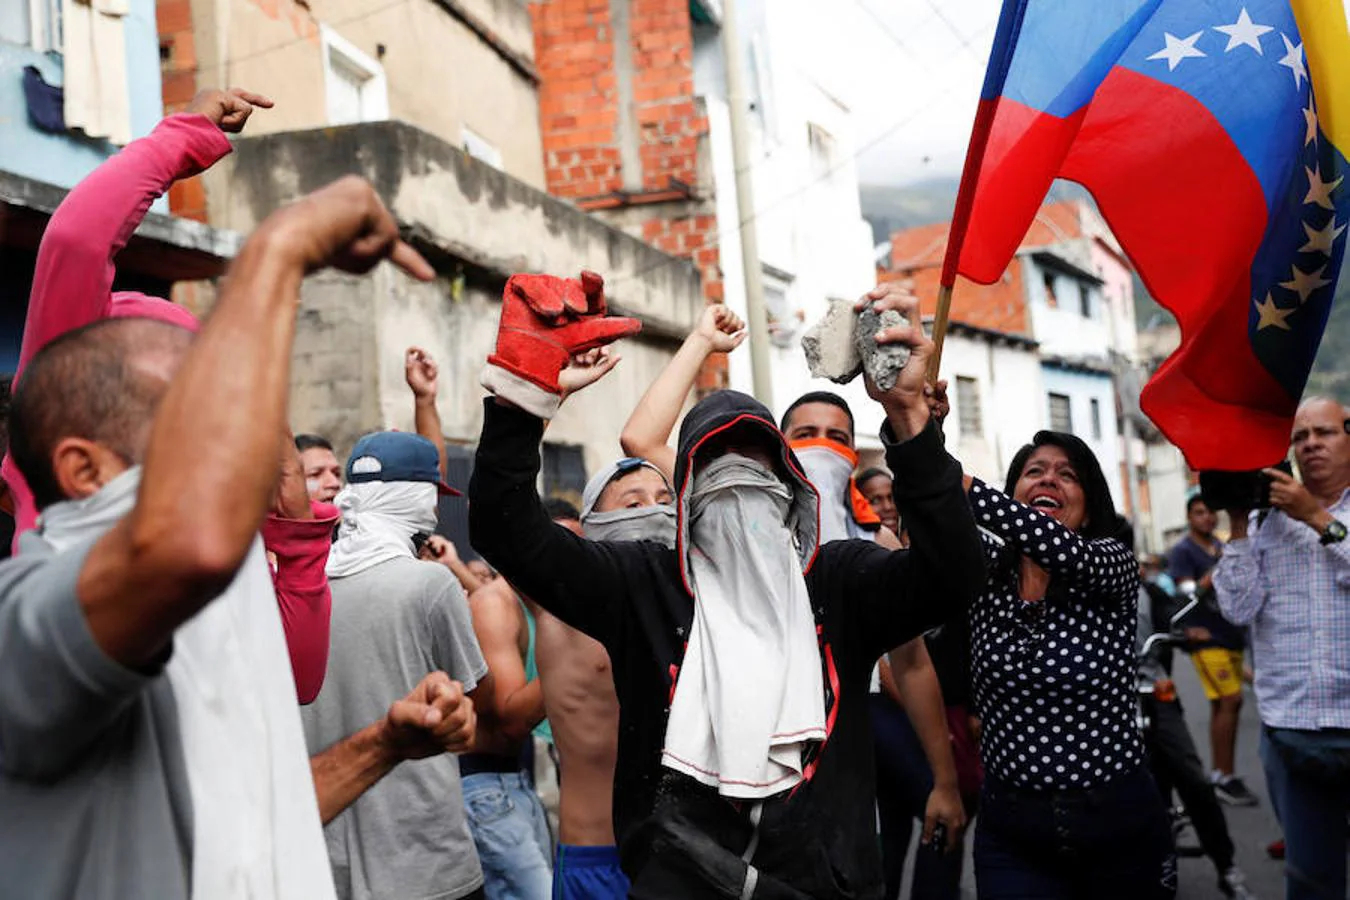 Las imágenes más dramáticas de la sublevación militar en Venezuela. Varios manifestantes corean cánticos contra Maduro, mientras uno de ellos sostiene una bandera de Venezuela